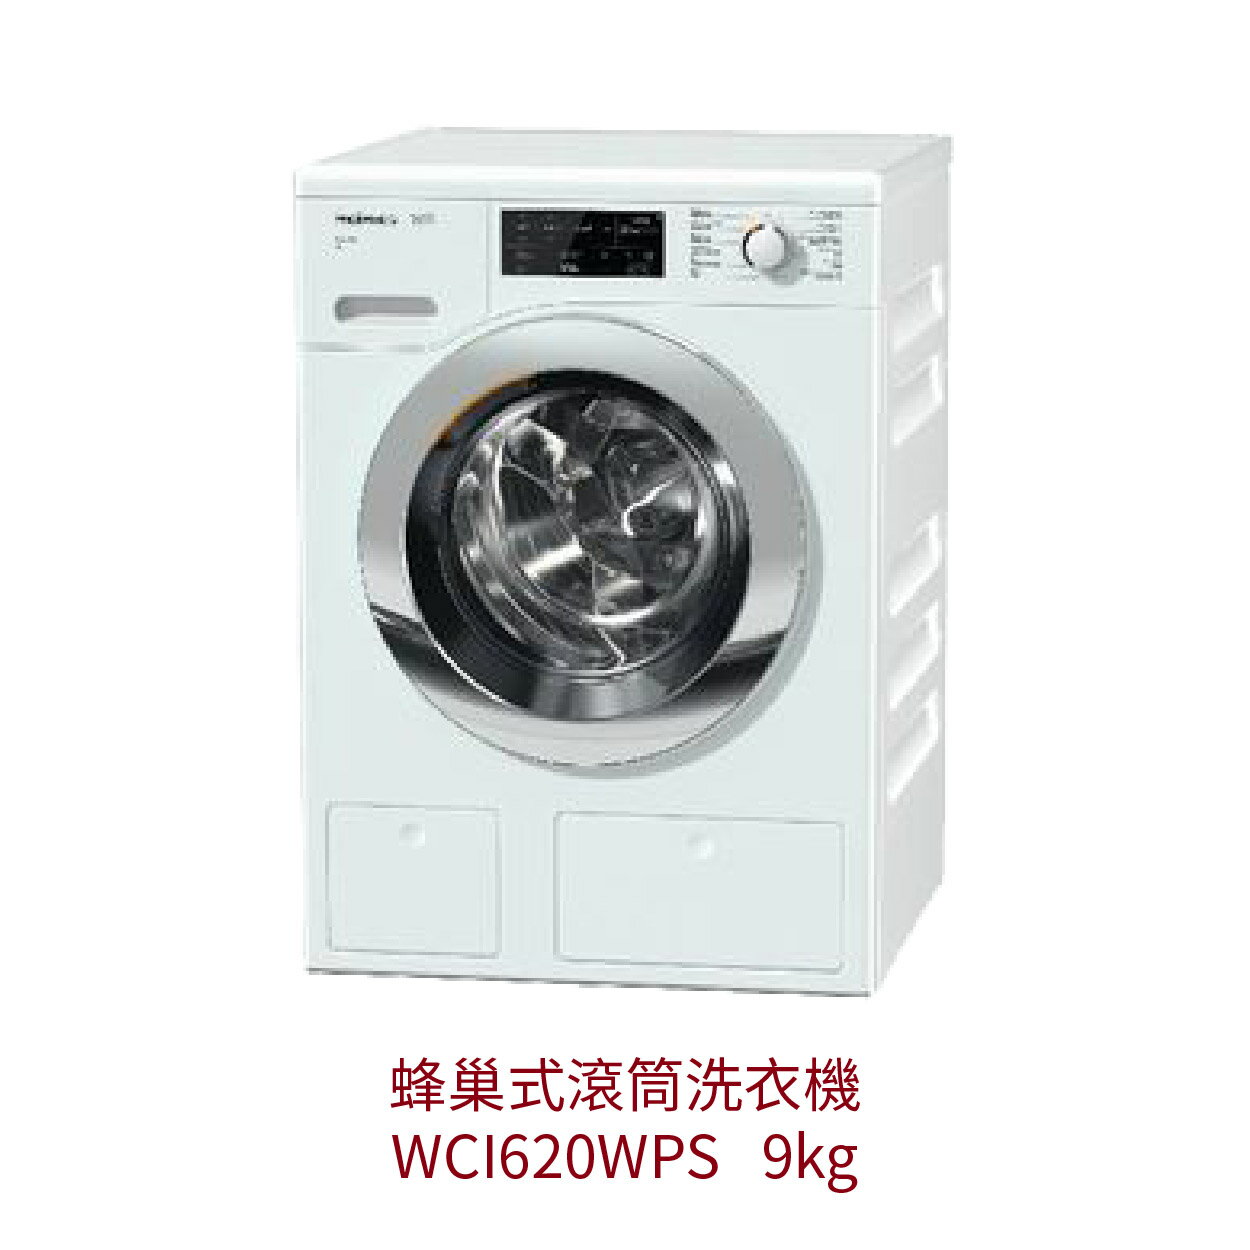 【點數10%回饋】WCI620WPS Miele 蜂巢式滾筒洗衣機 獨立式 220V 歐洲原裝進口